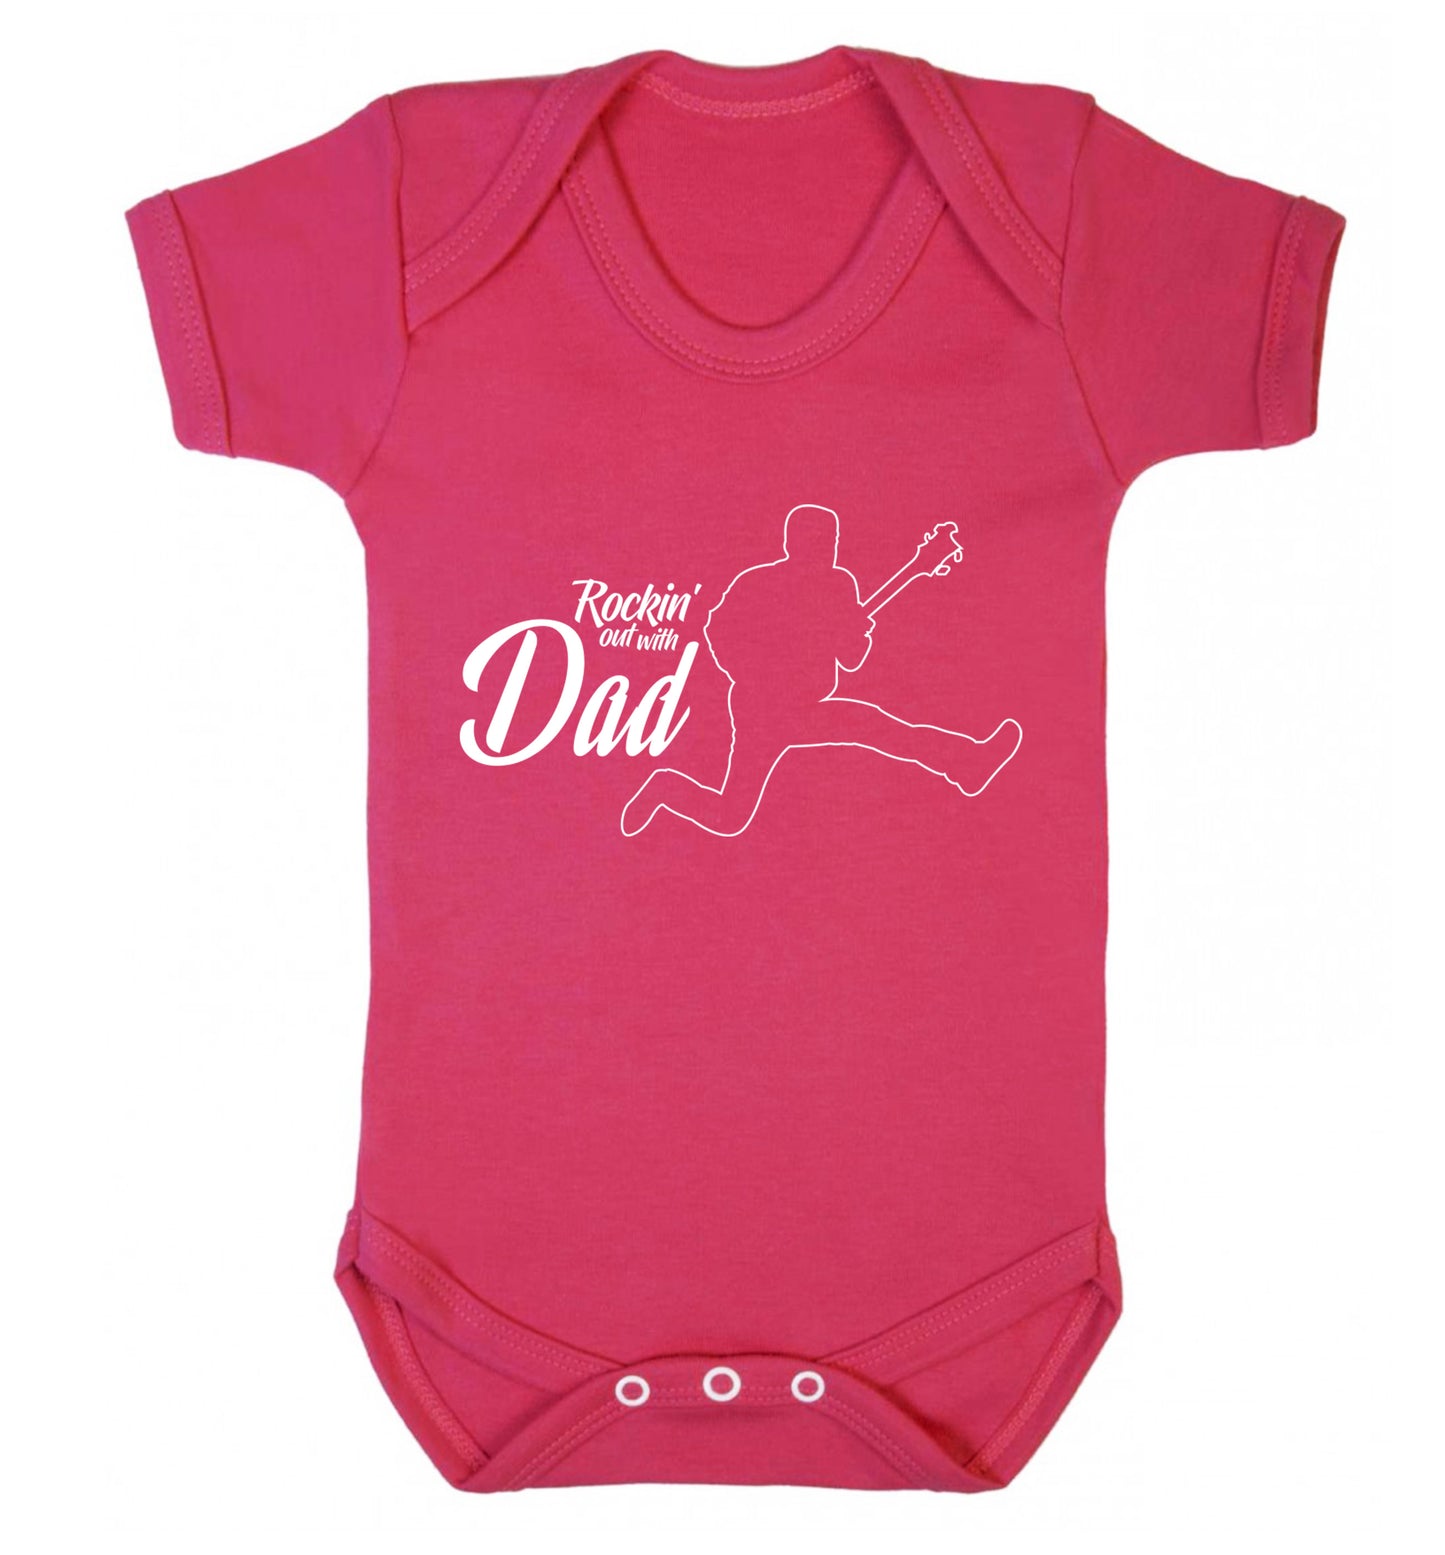 Rockin out with dad Baby Vest dark pink 18-24 months